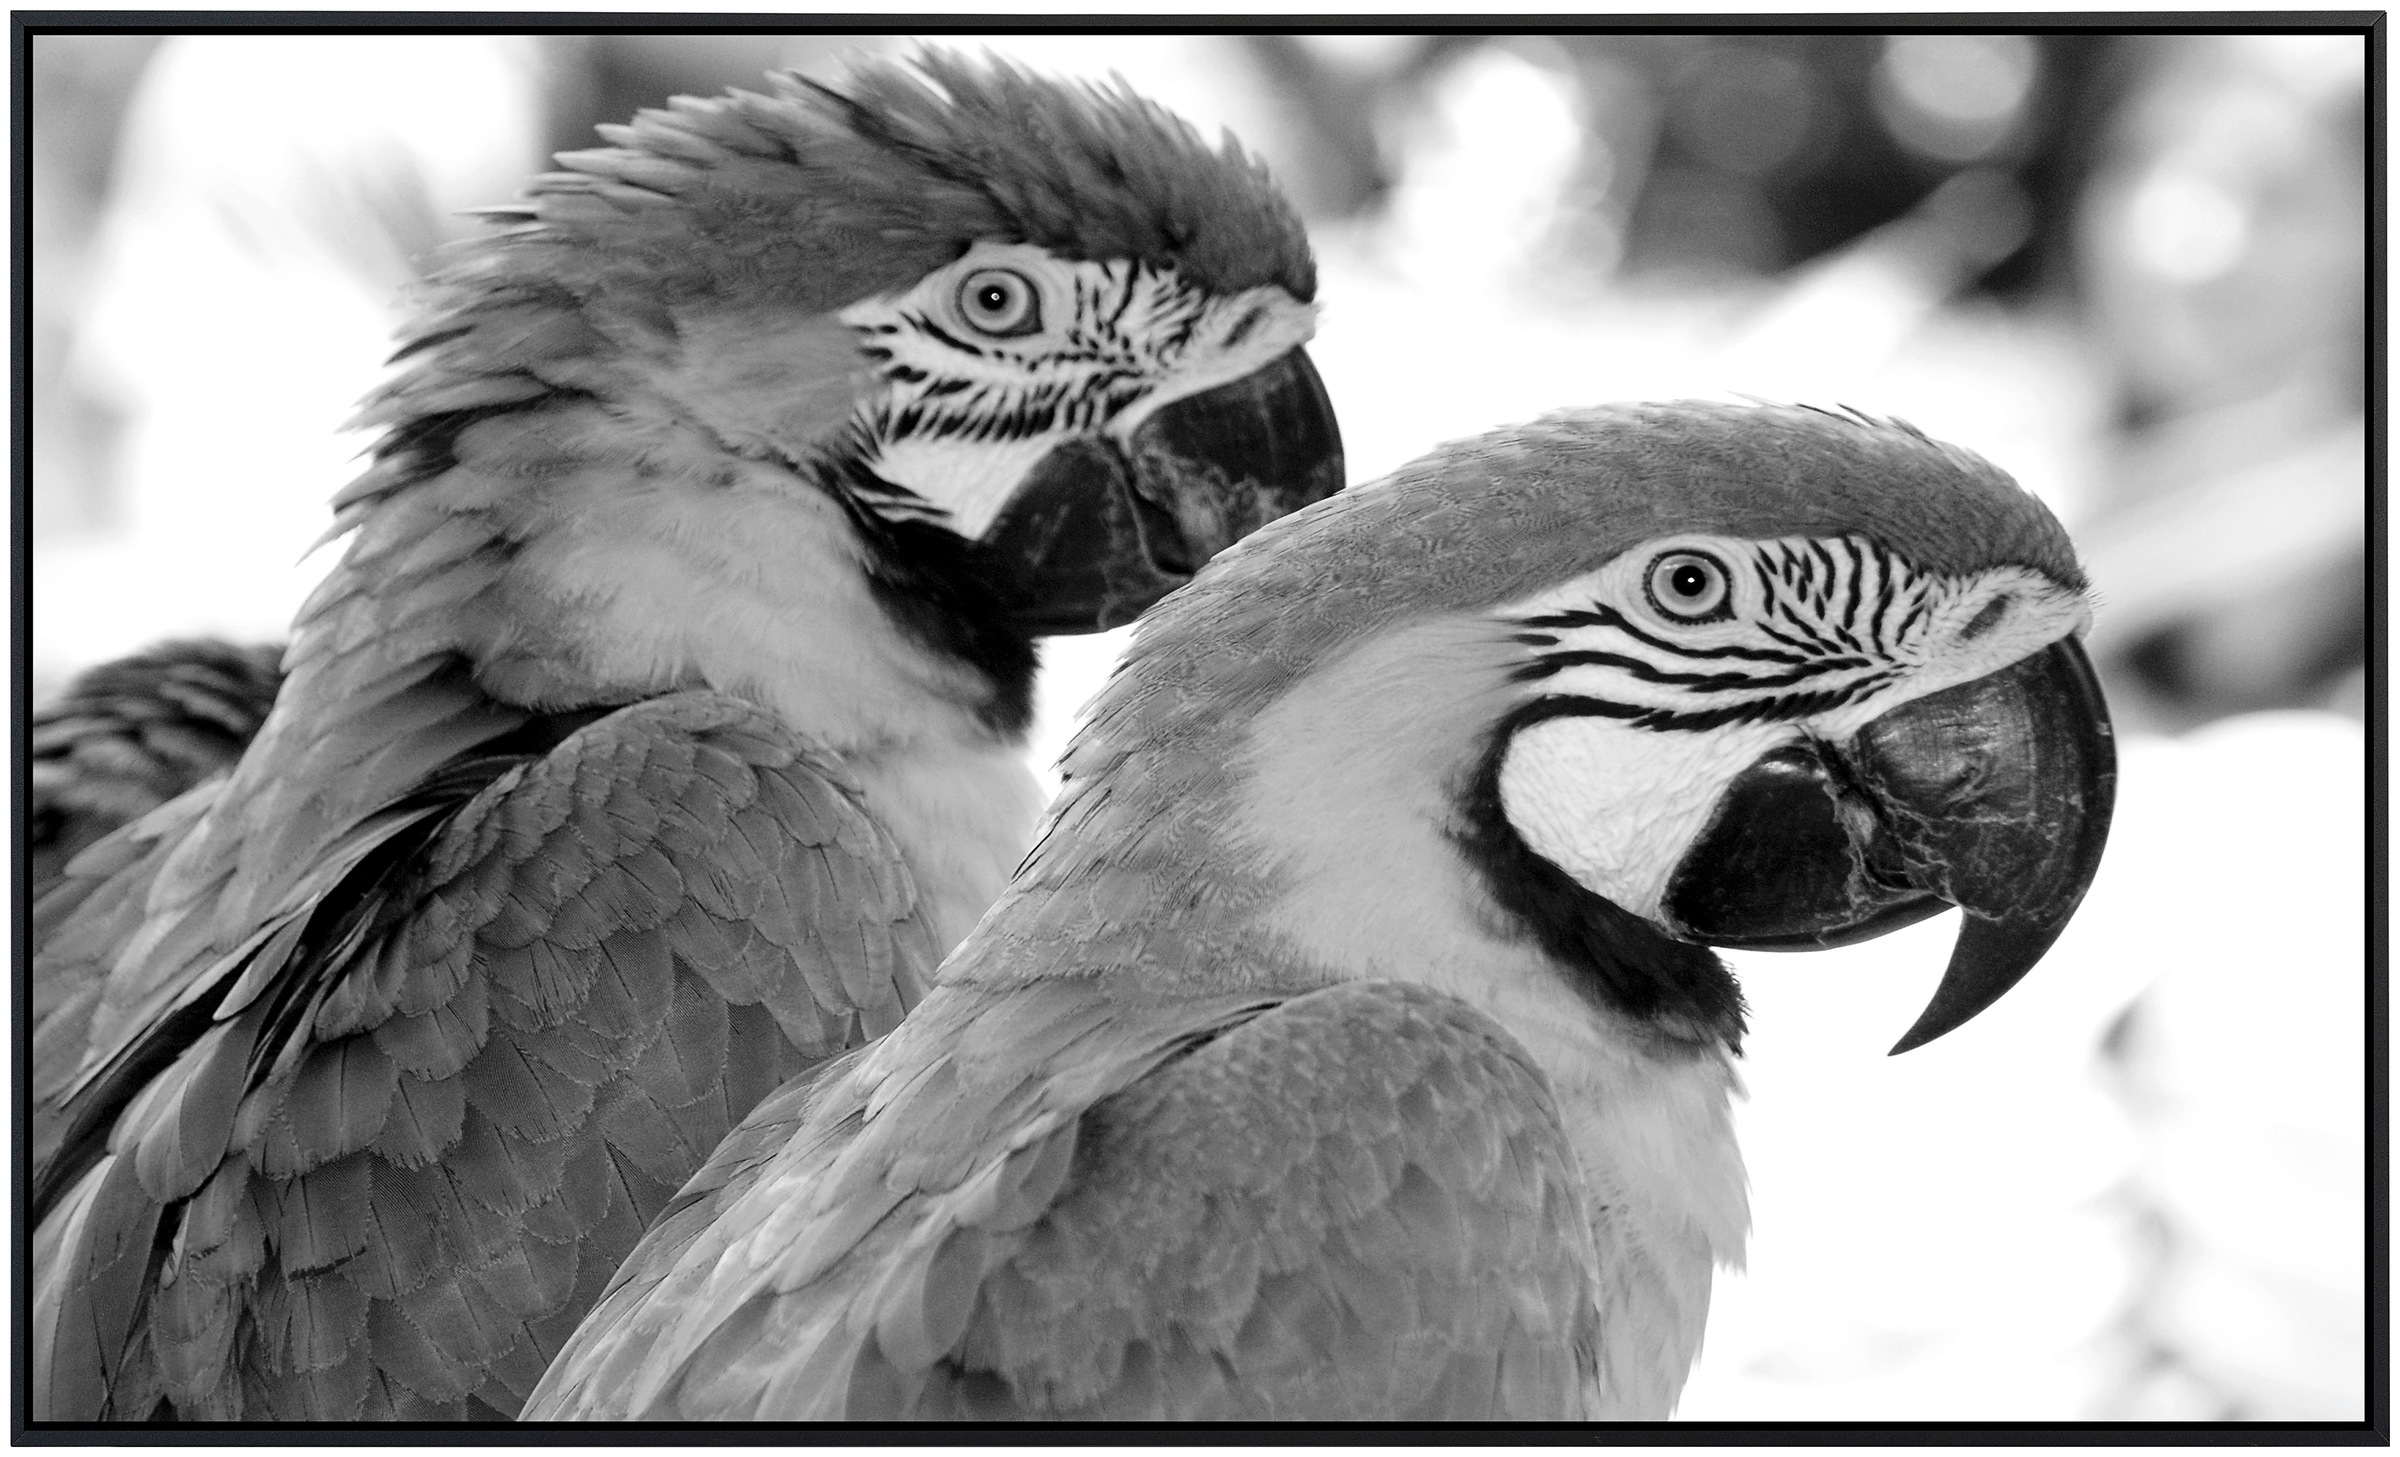 Papermoon Infrarotheizung »Papagei Schwarz & Weiß«, sehr angenehme Strahlun günstig online kaufen